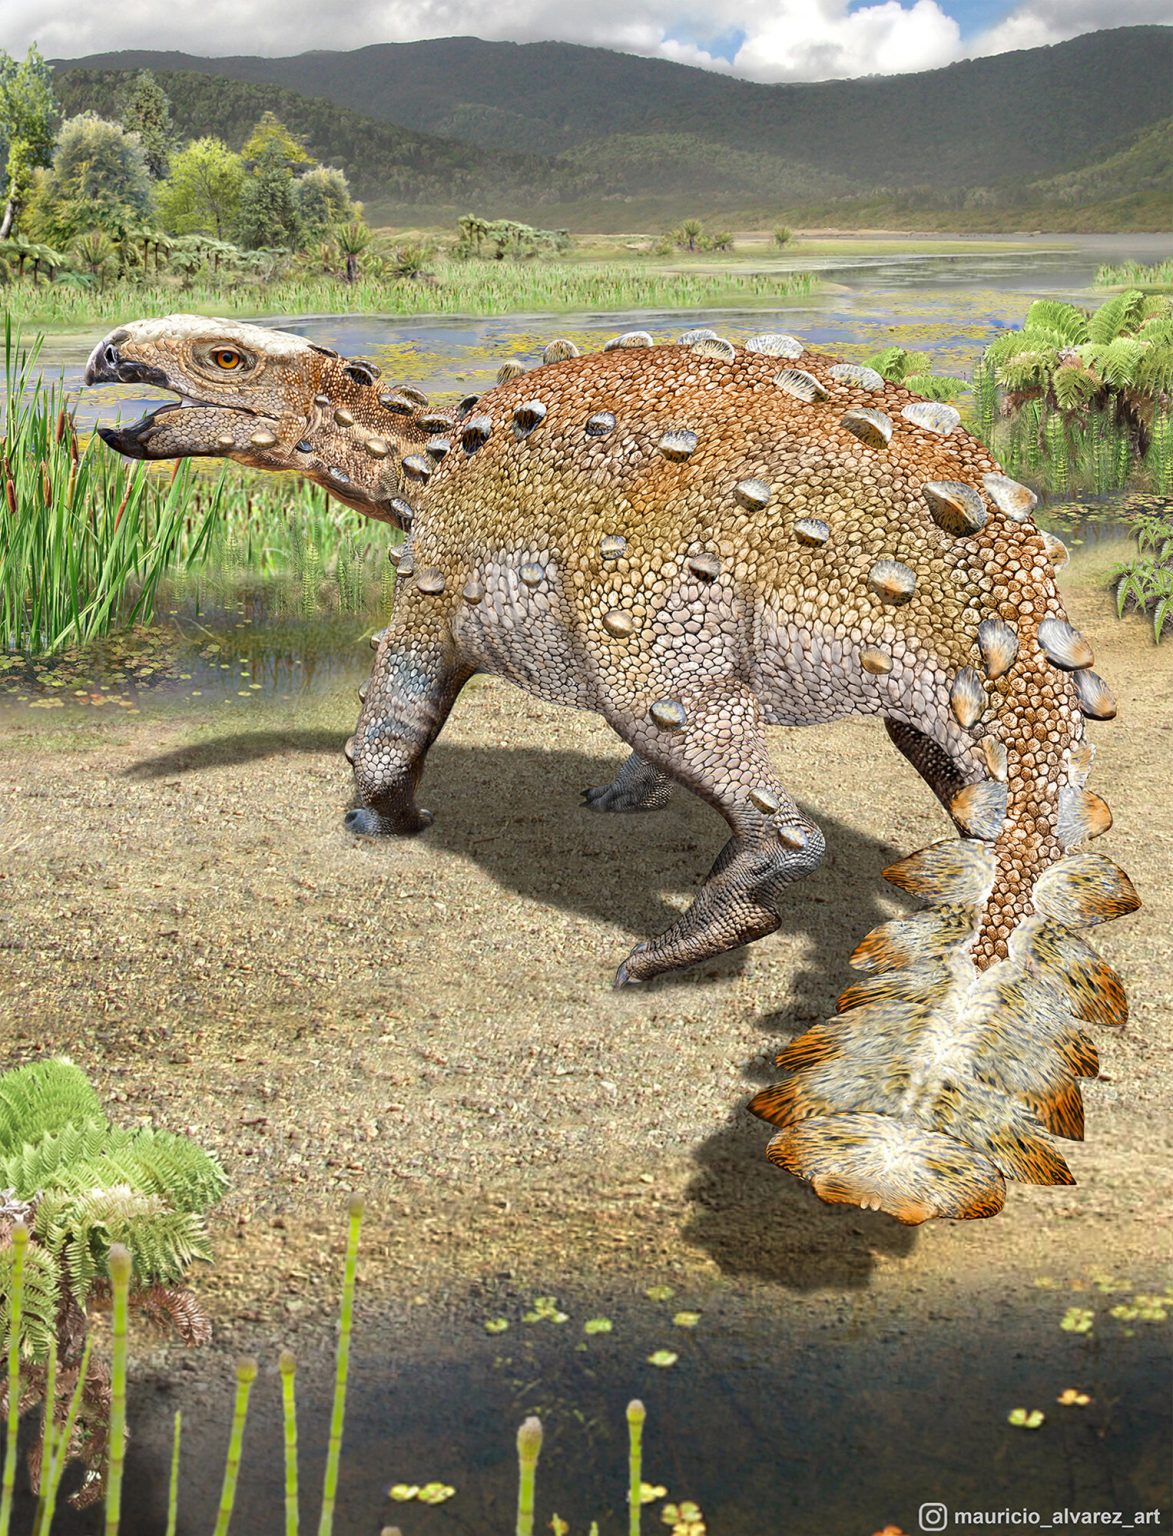 智利发现生活在7000多万年前白垩纪晚期的恐龙新物种 尾巴独特且攻击力强